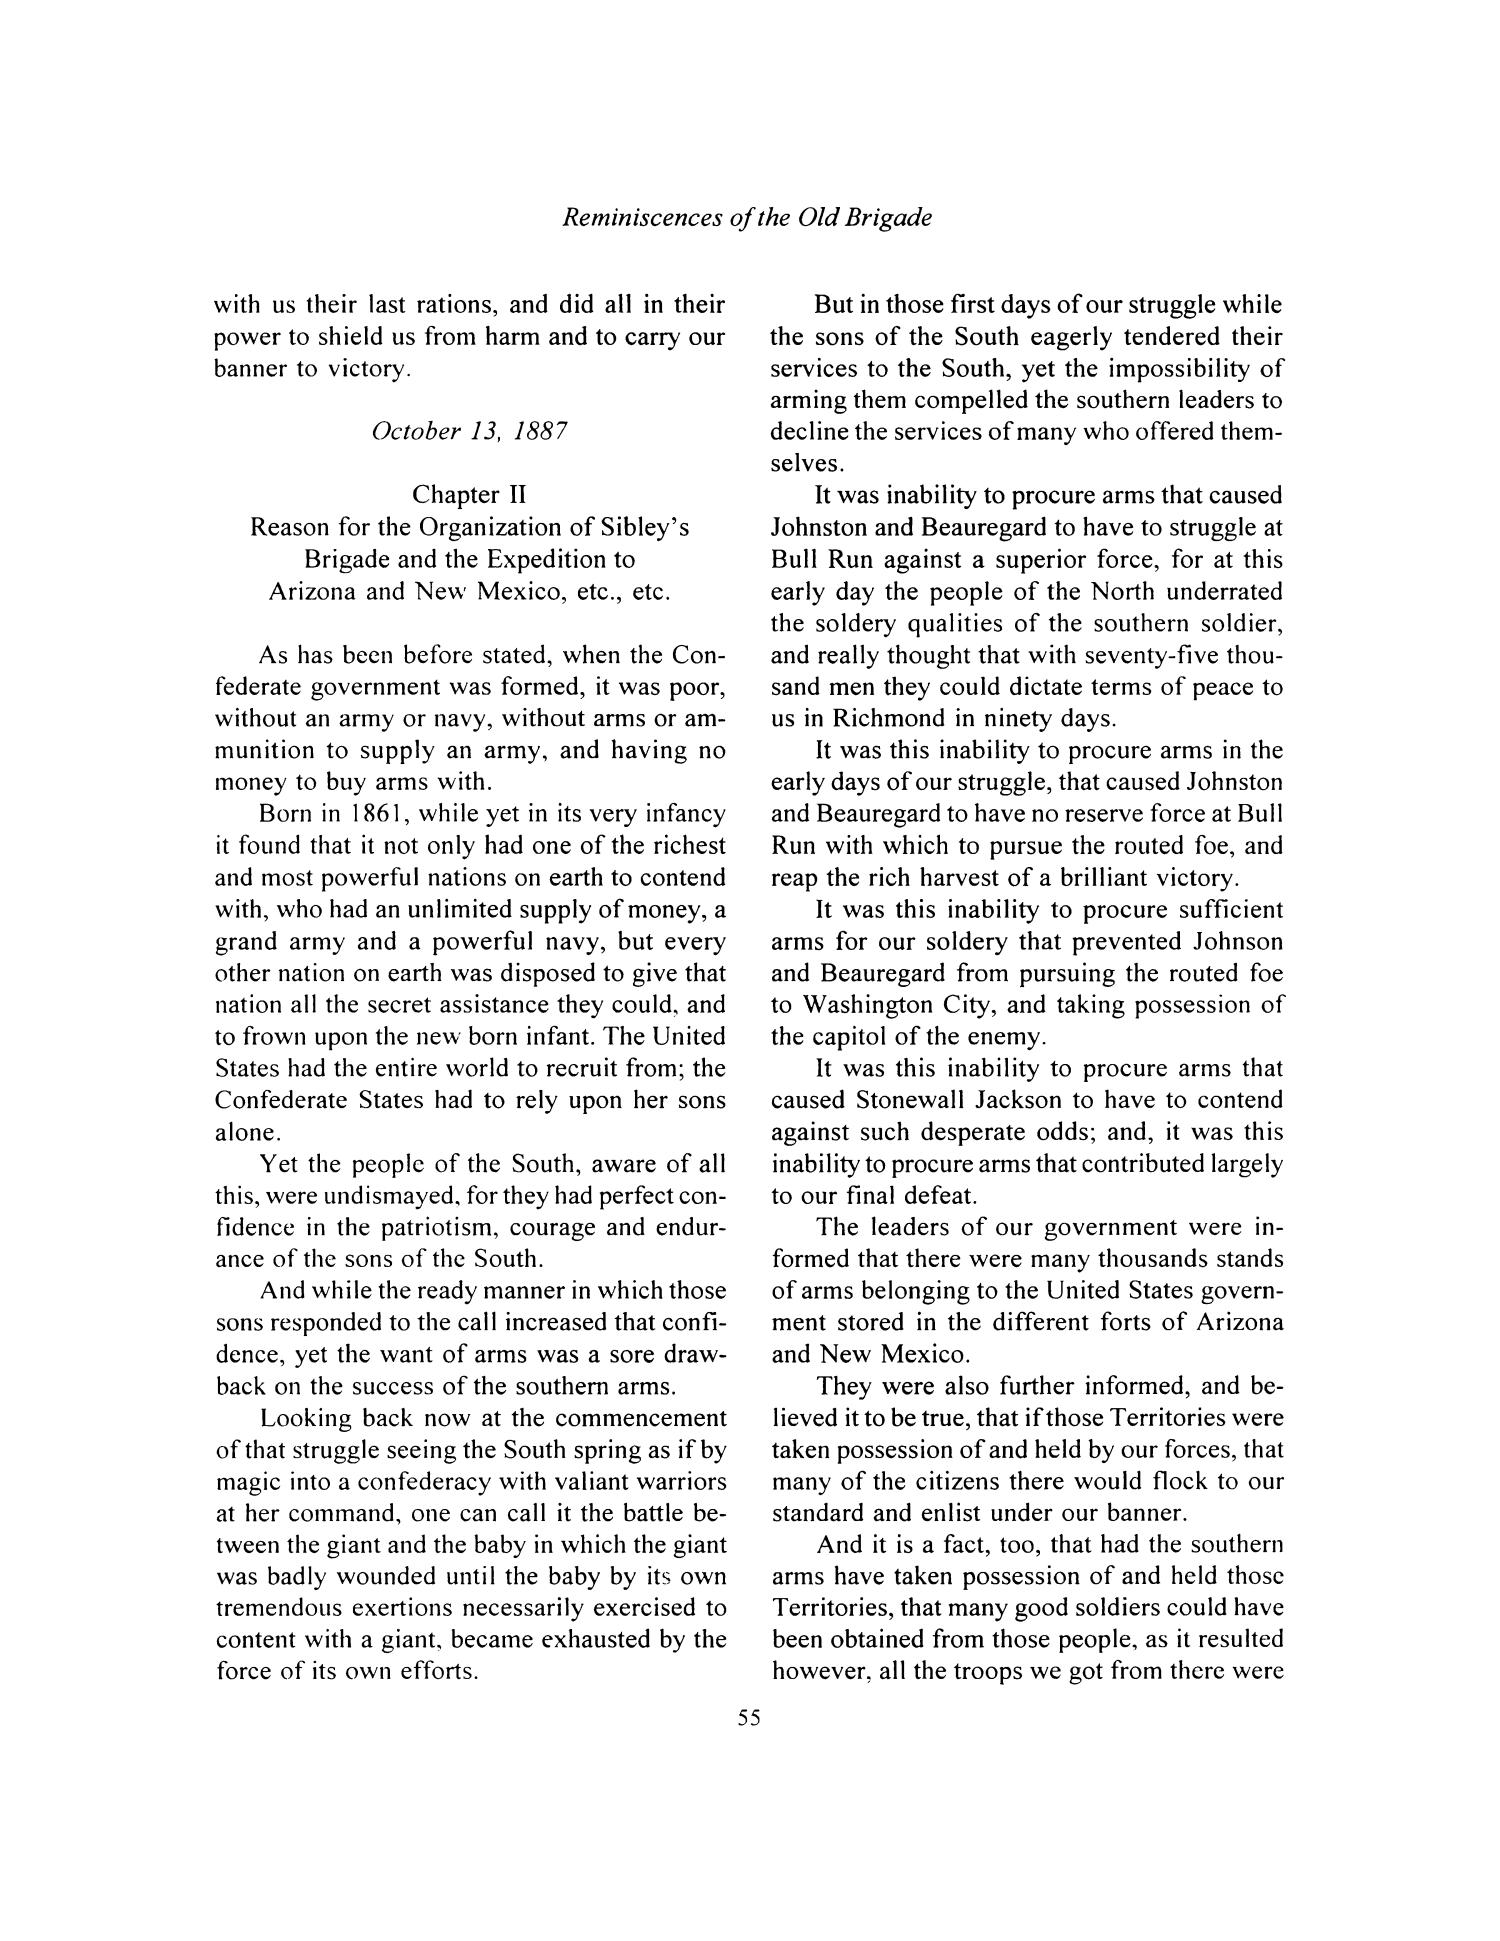 Nesbitt Memorial Library Journal, Volume 9, Number 2, May 1999
                                                
                                                    55
                                                